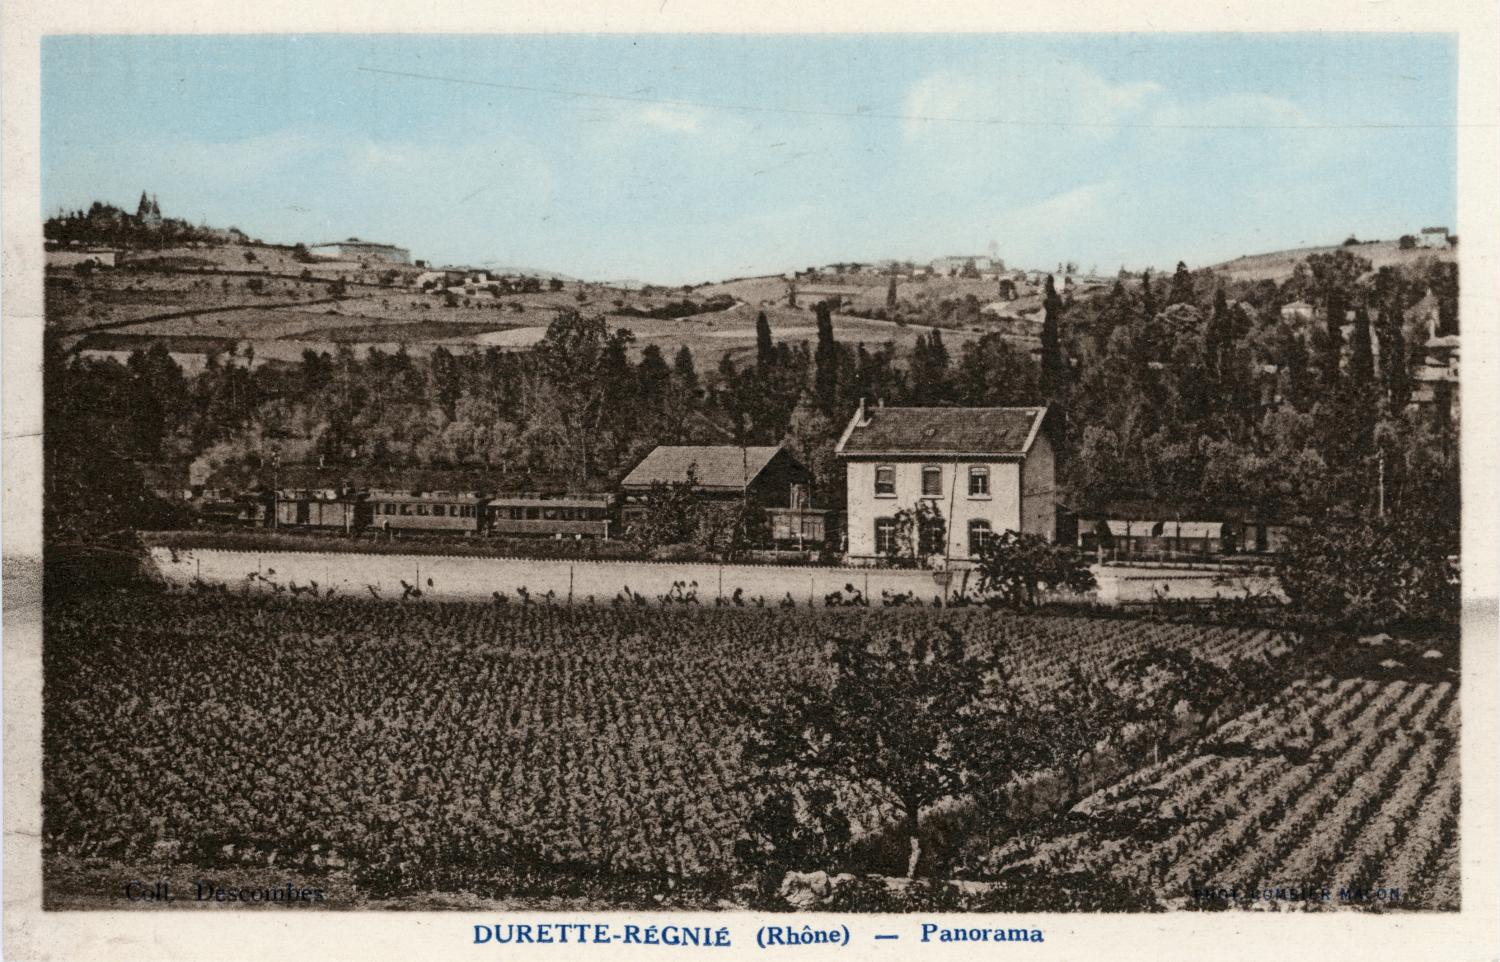 Durette-Régnié (Rhône). - Panorama